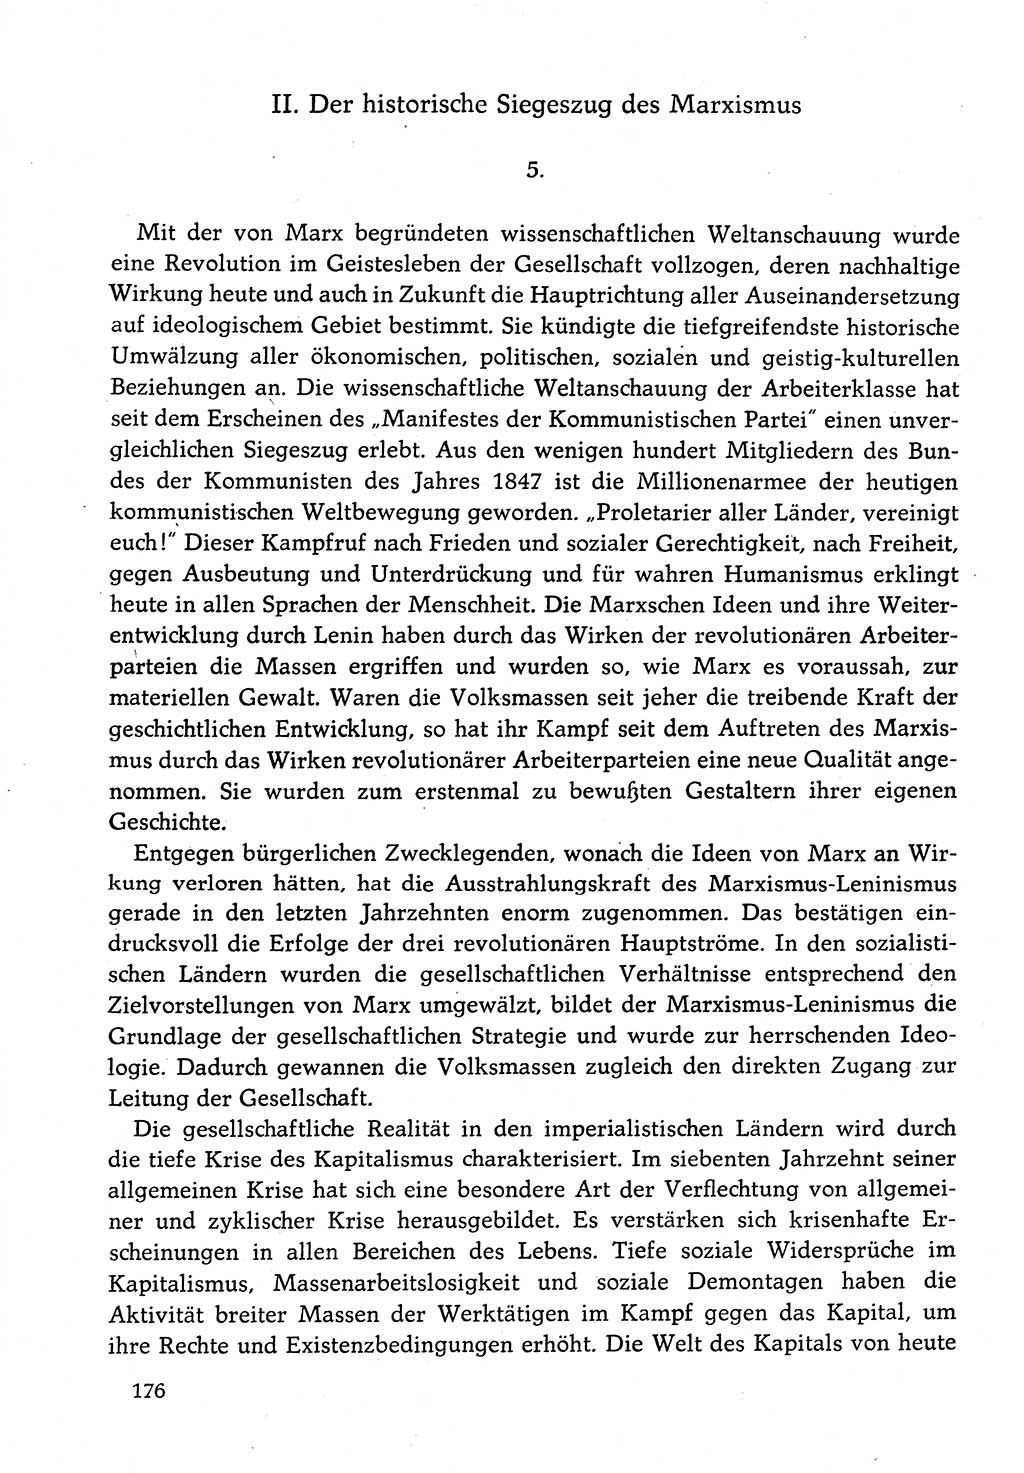 Dokumente der Sozialistischen Einheitspartei Deutschlands (SED) [Deutsche Demokratische Republik (DDR)] 1982-1983, Seite 176 (Dok. SED DDR 1982-1983, S. 176)